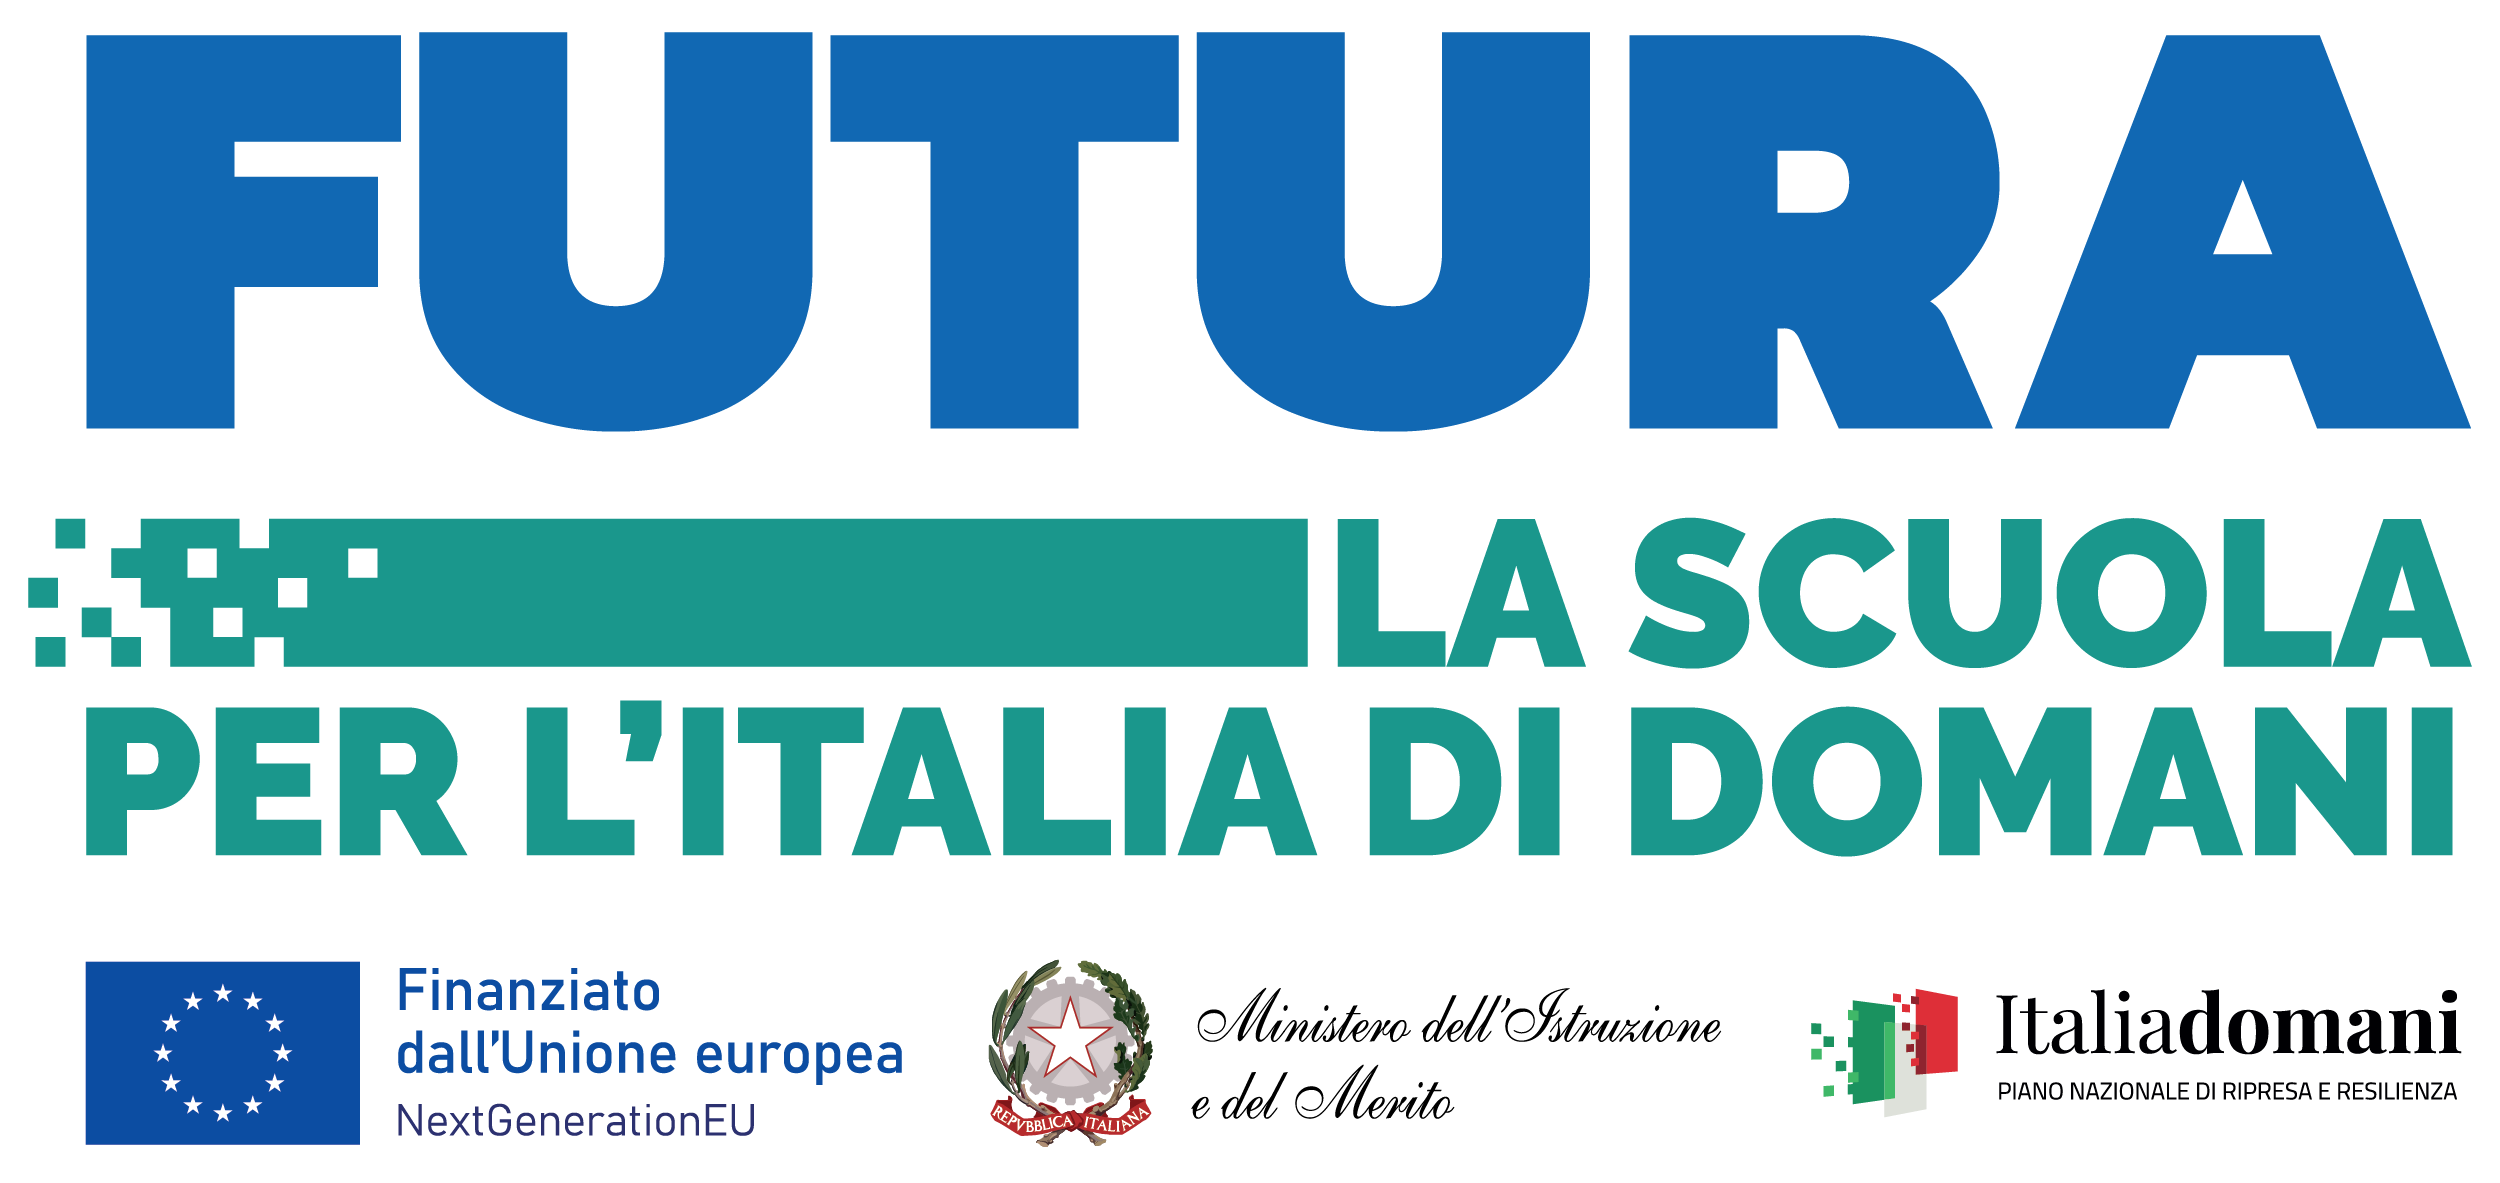 Logo Futura per l'Italia